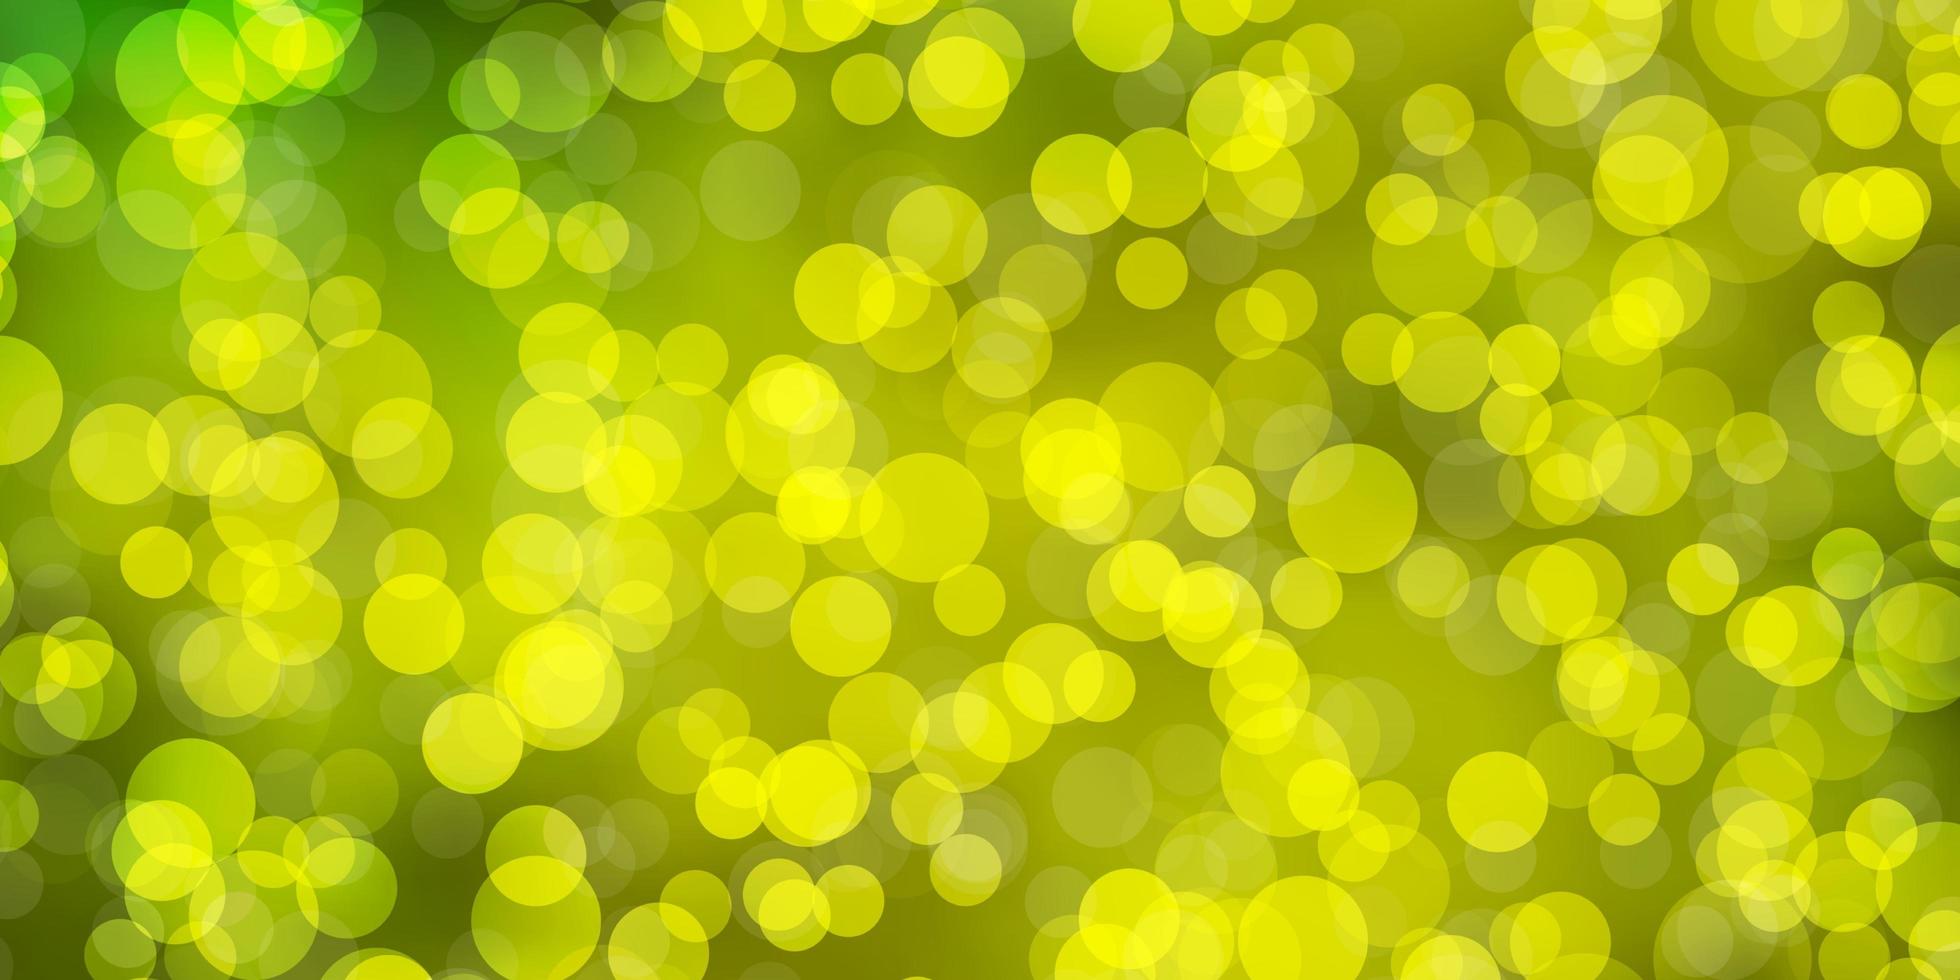 modello vettoriale verde chiaro, giallo con cerchi.